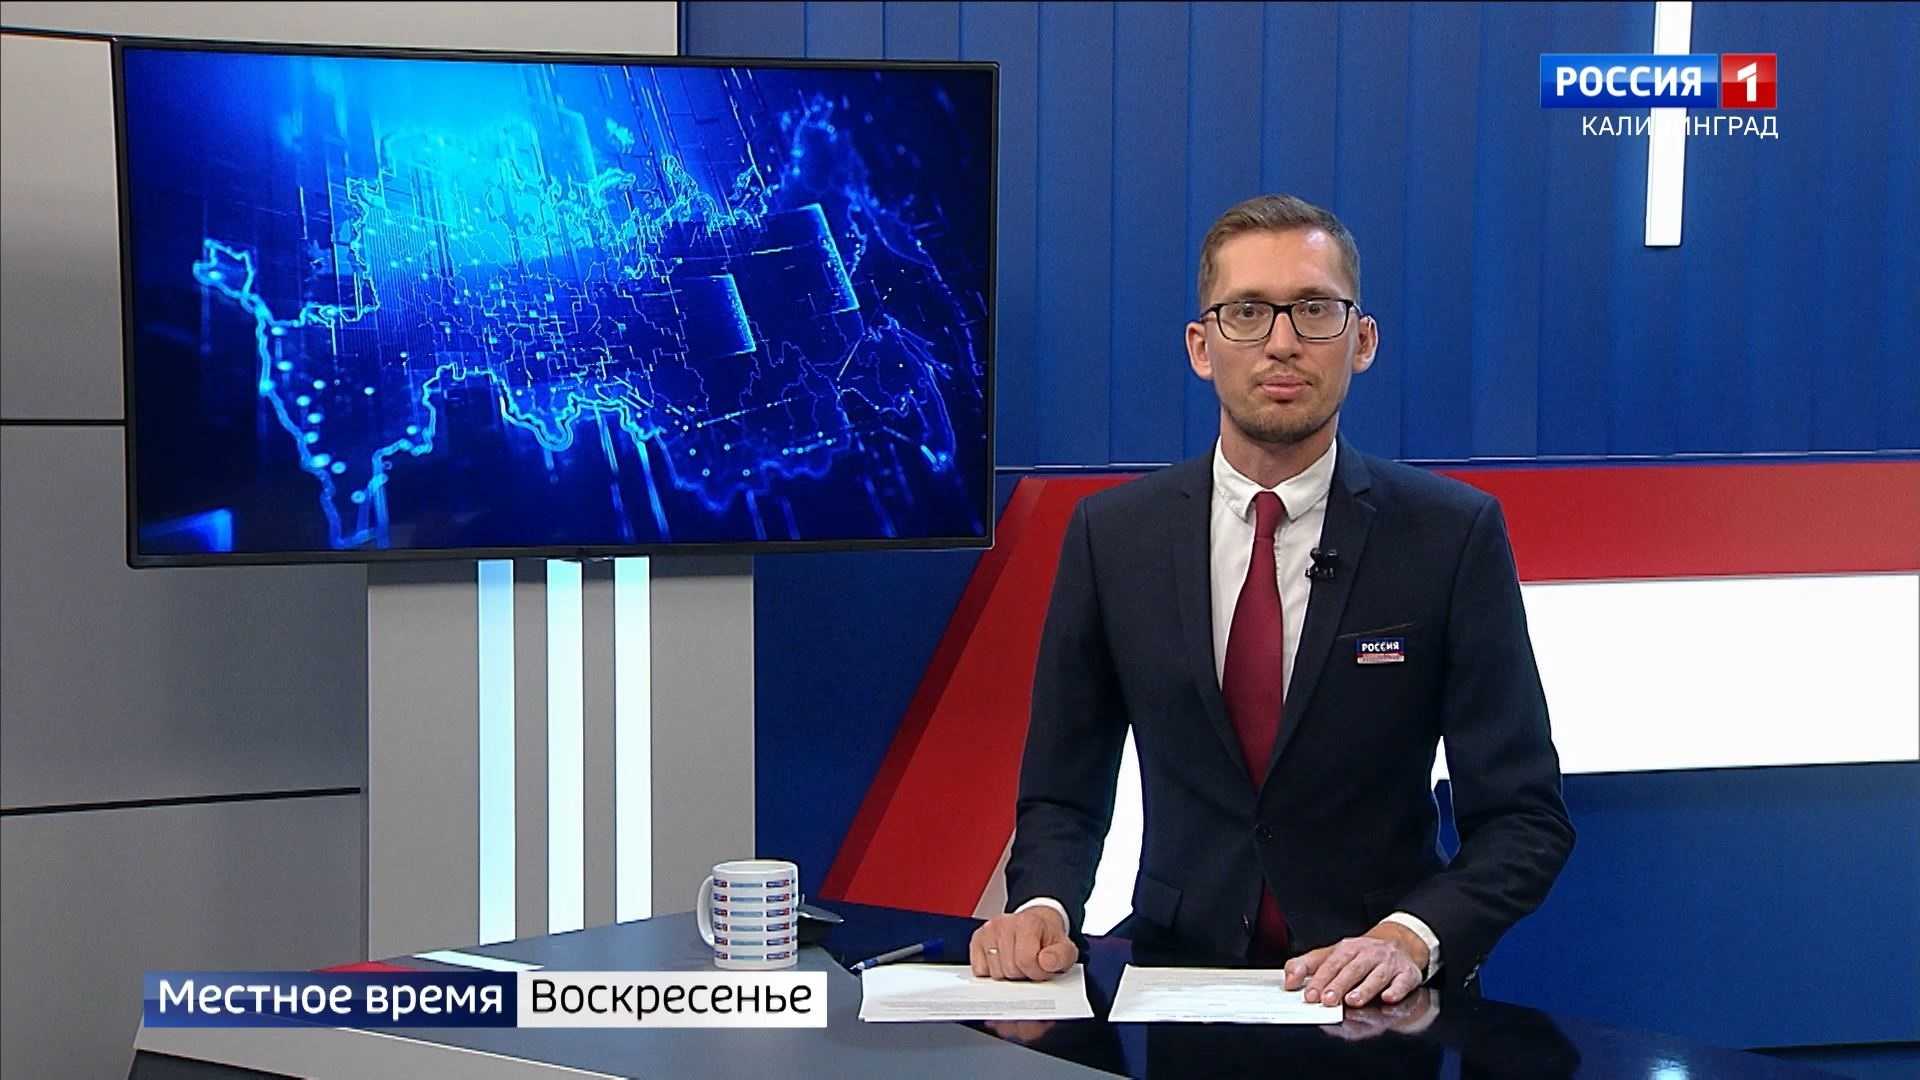 Россия 1 местные новости сегодня